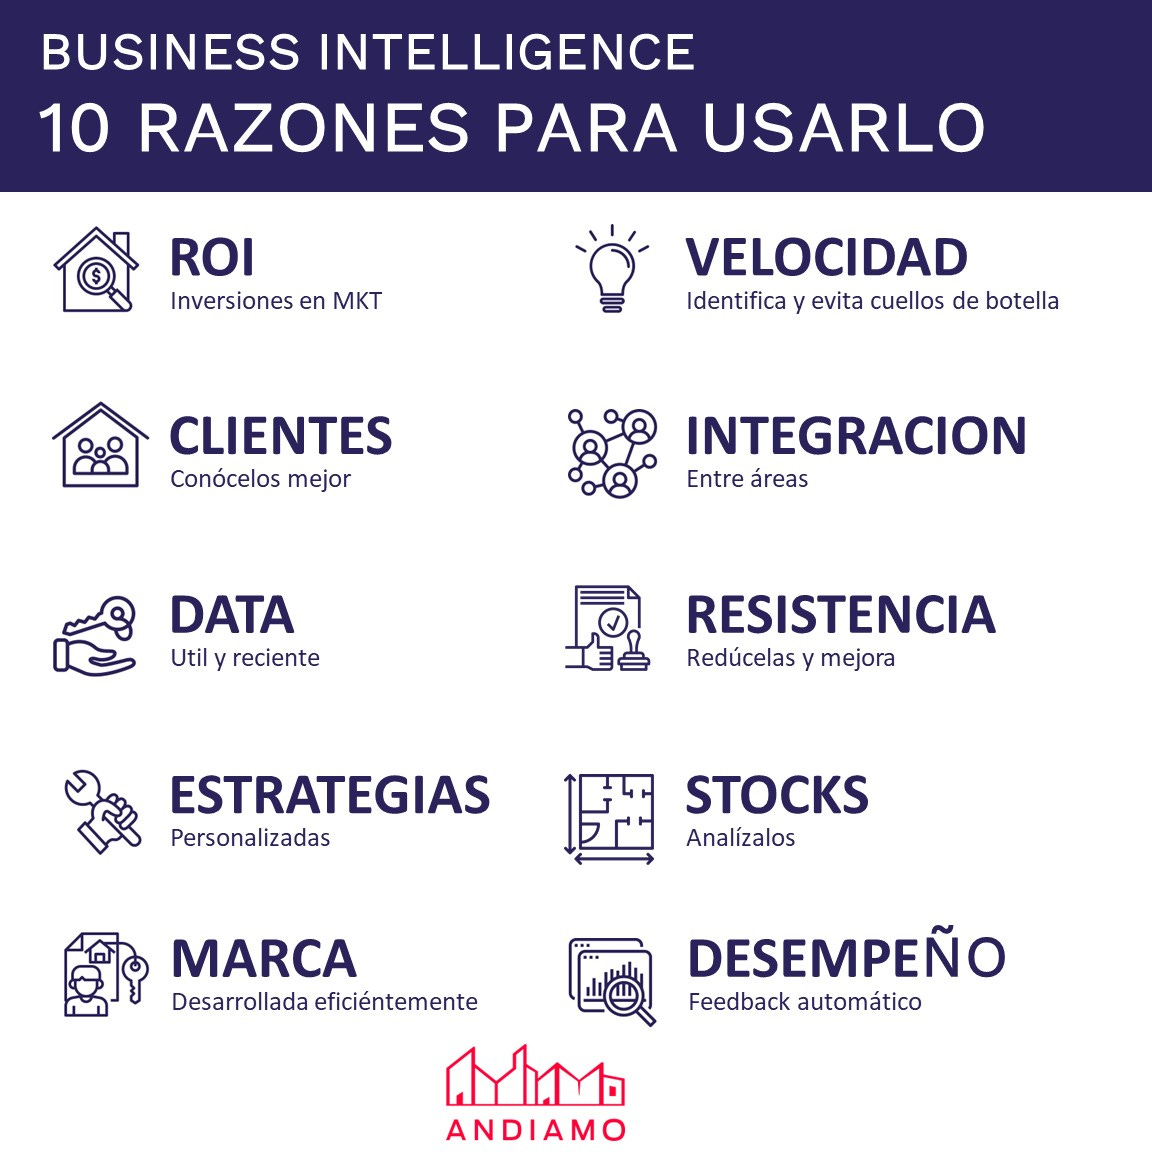 Business Intelligence - 10 razones para usarlo en el sector inmobiliario